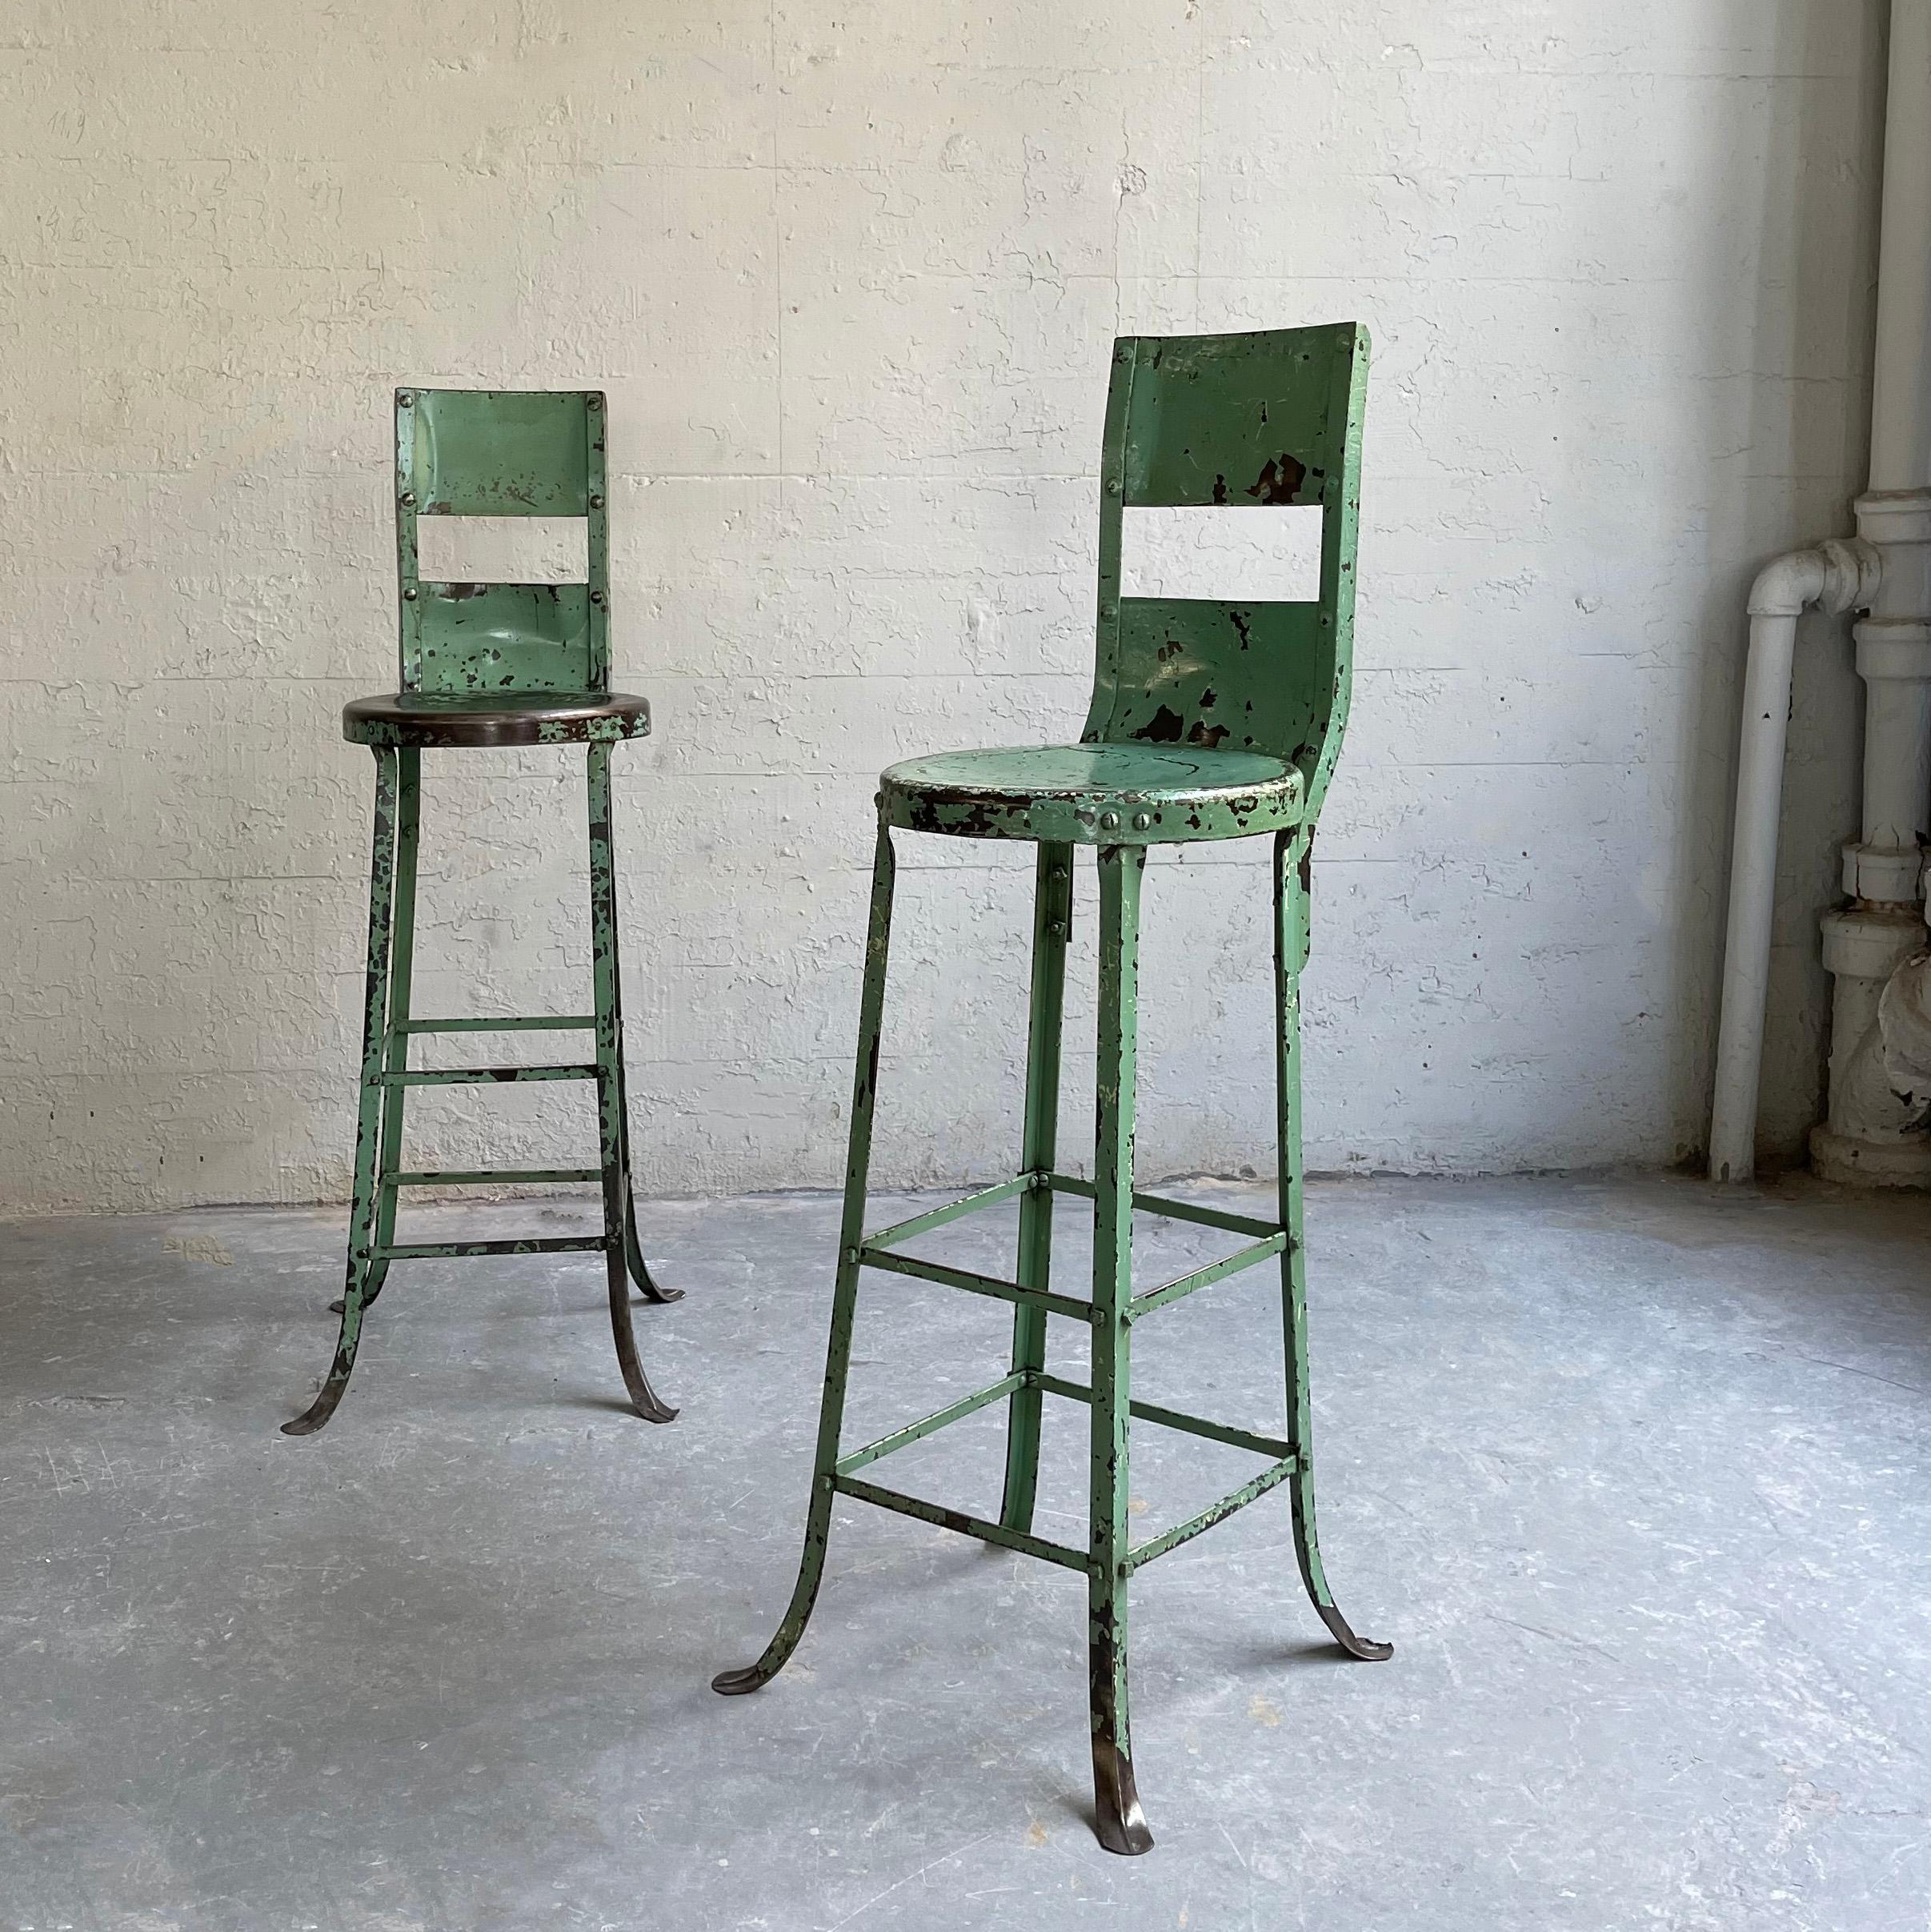 metal workshop stool